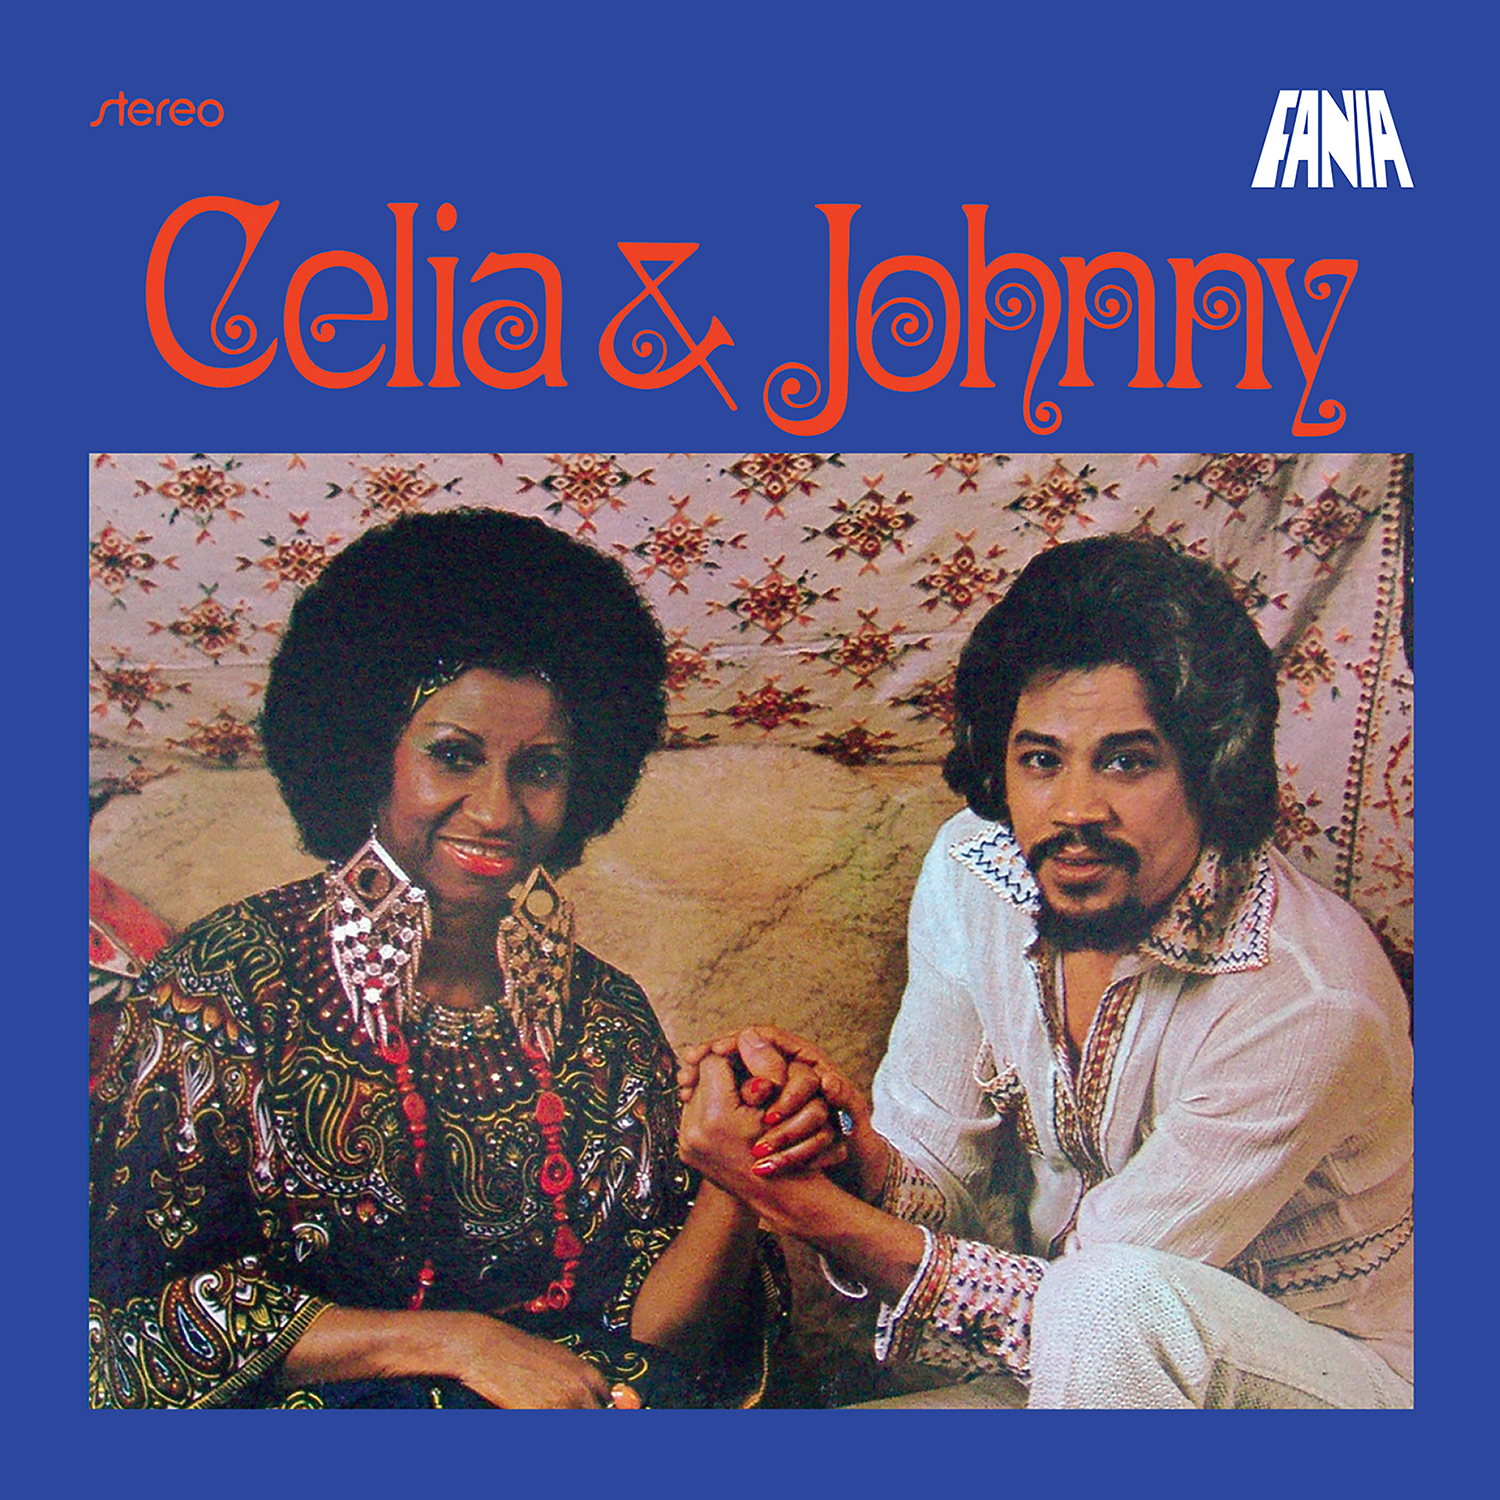 Imagen destacada de "Johnny Pacheco, Celia Cruz - Celia & Johnny"